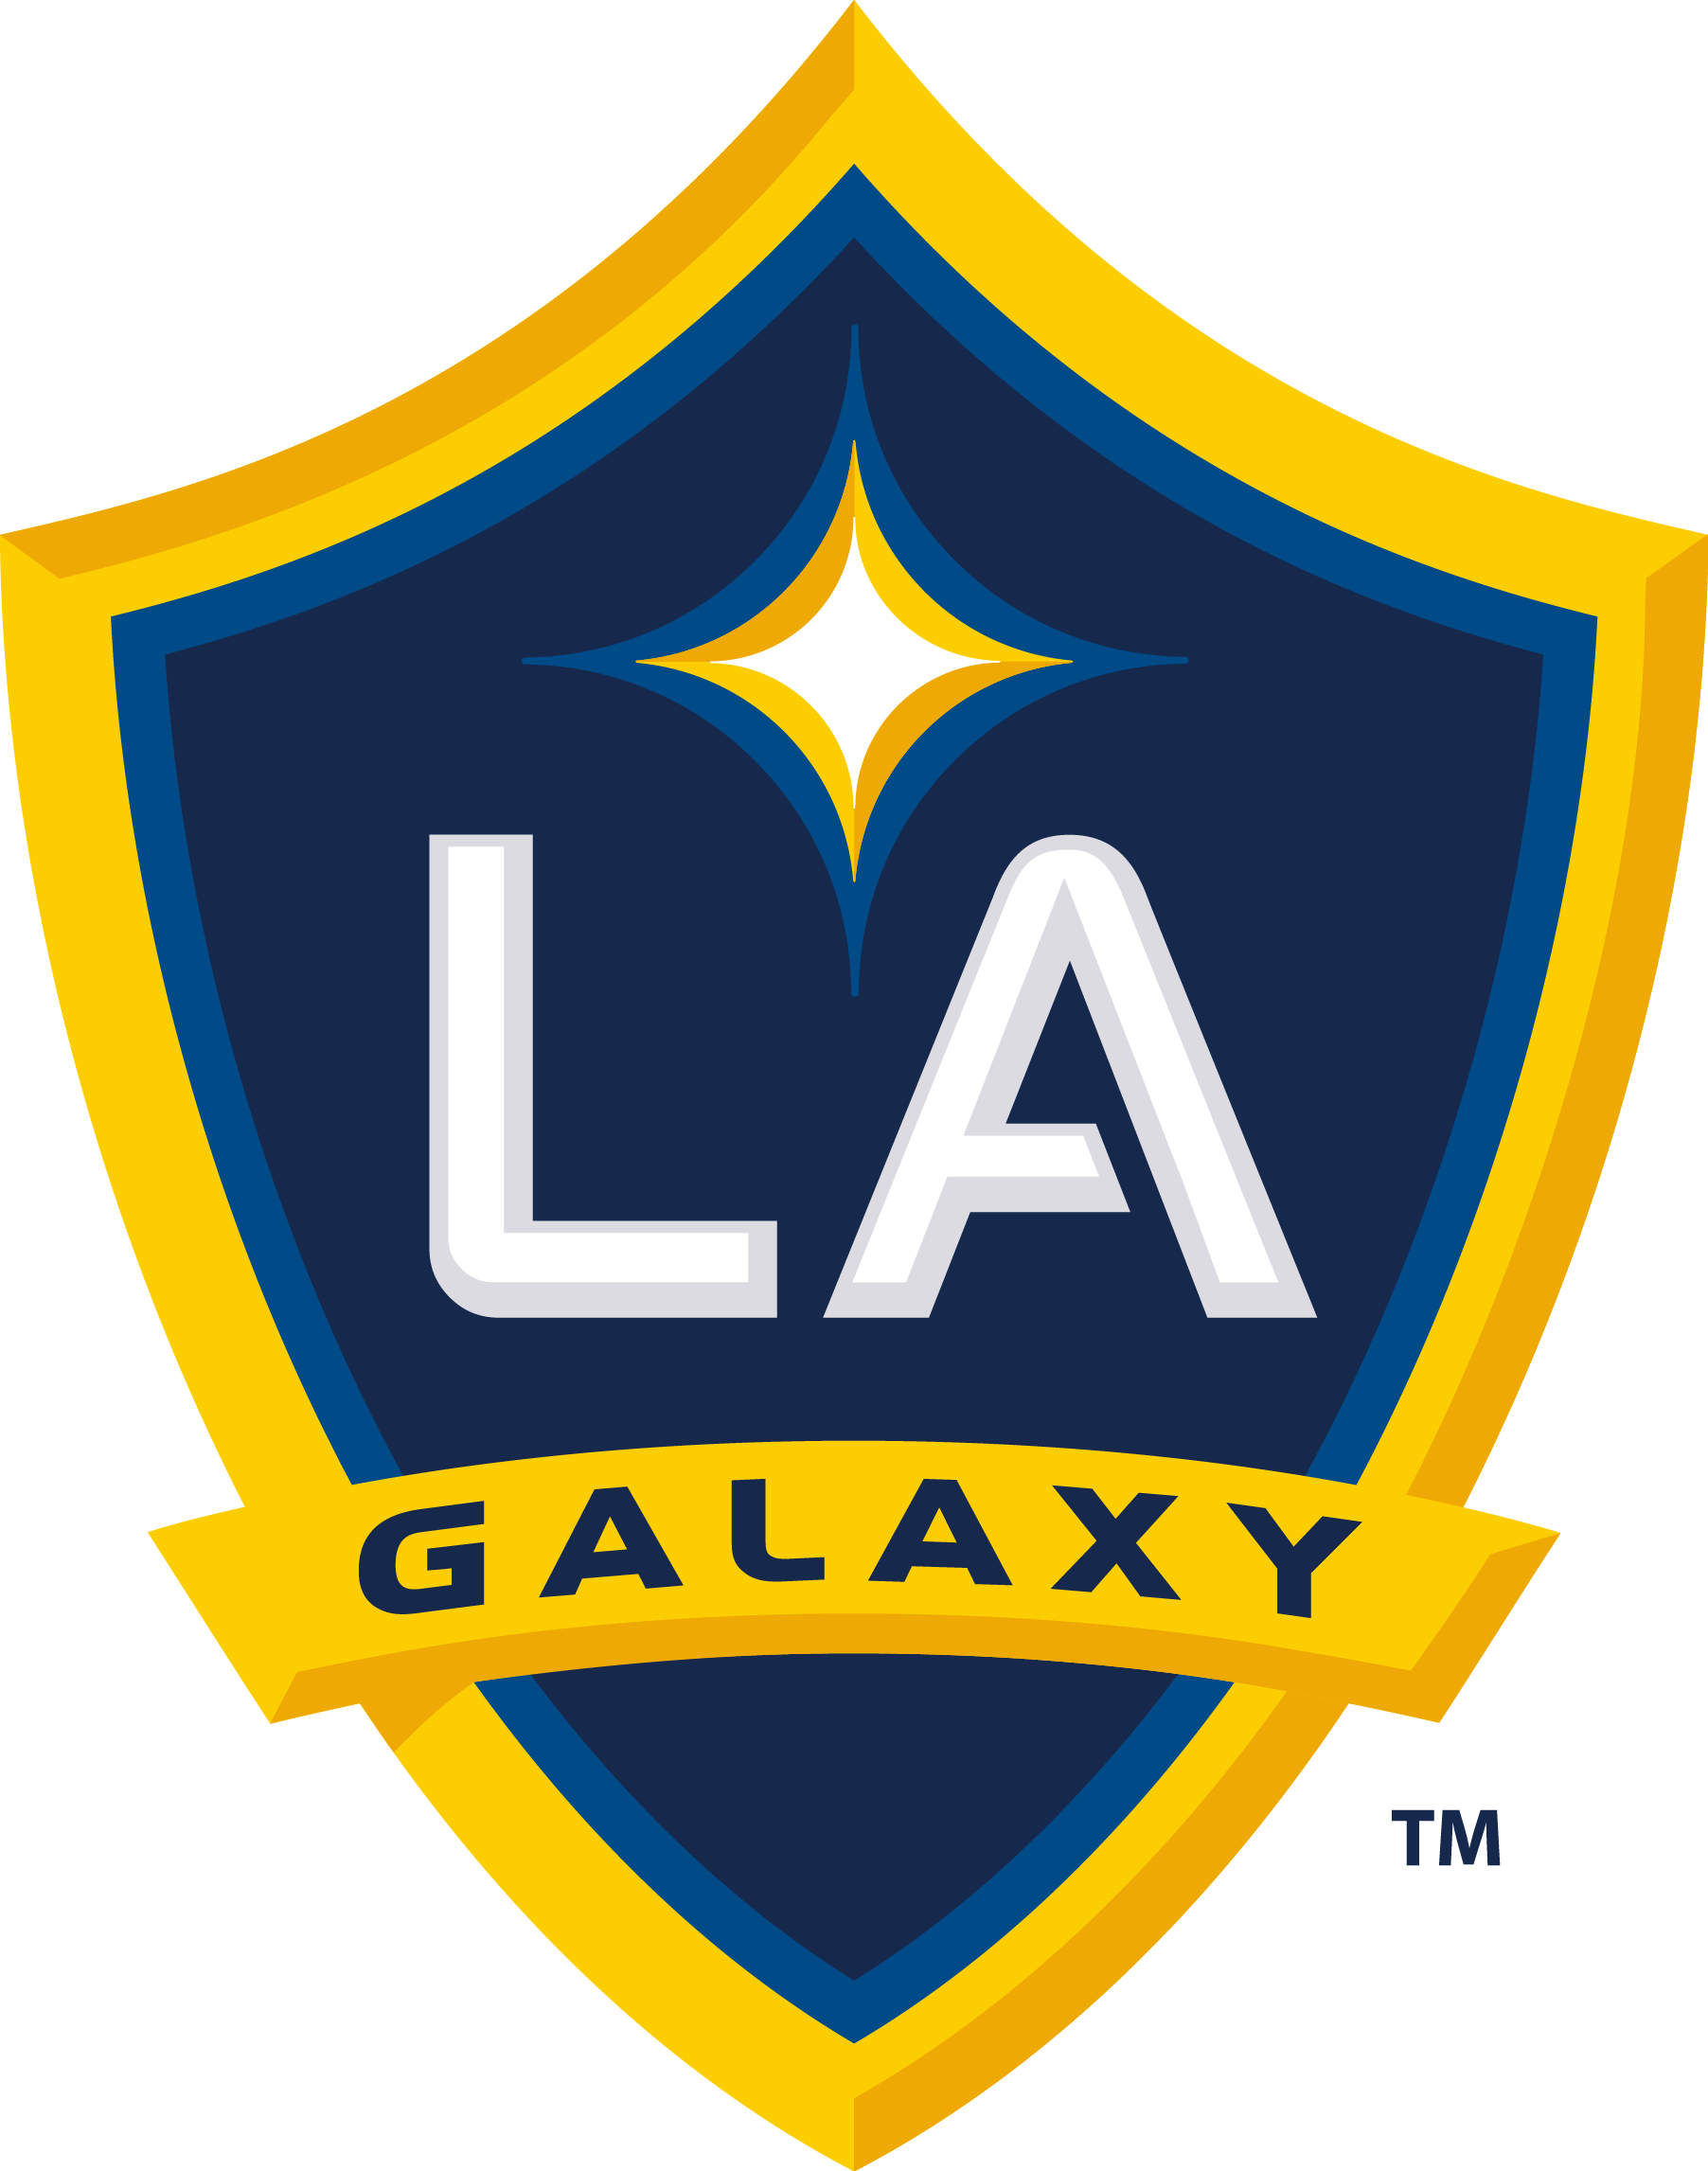 April 14 - Logo De Los Angeles Galaxy (1804x2293)